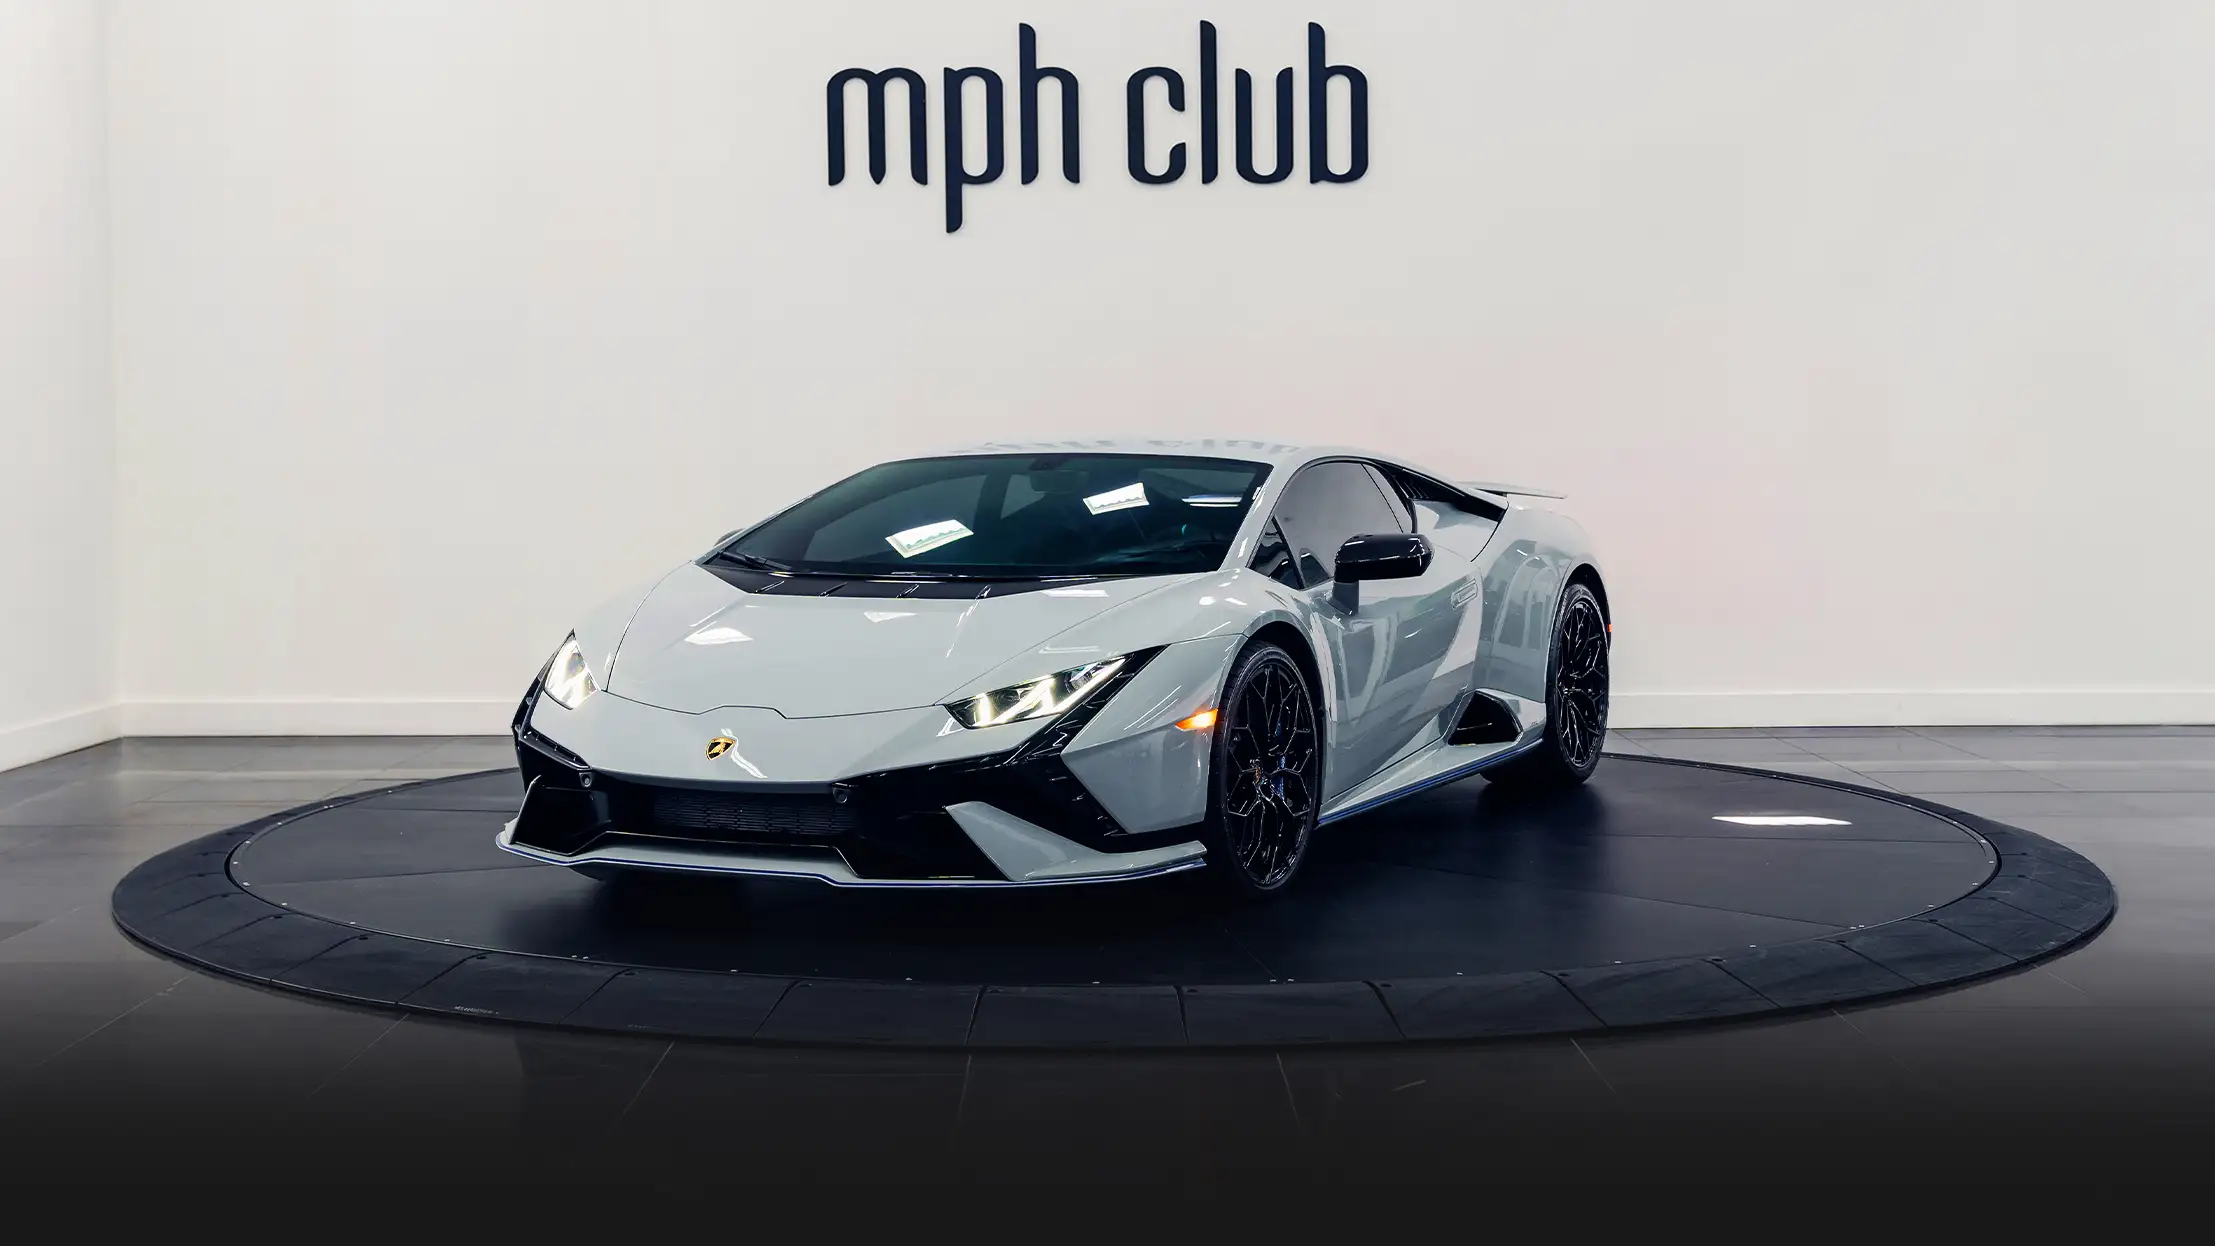 Grey Lamborghini Huracan Tecnica rental miami profile view - mph club